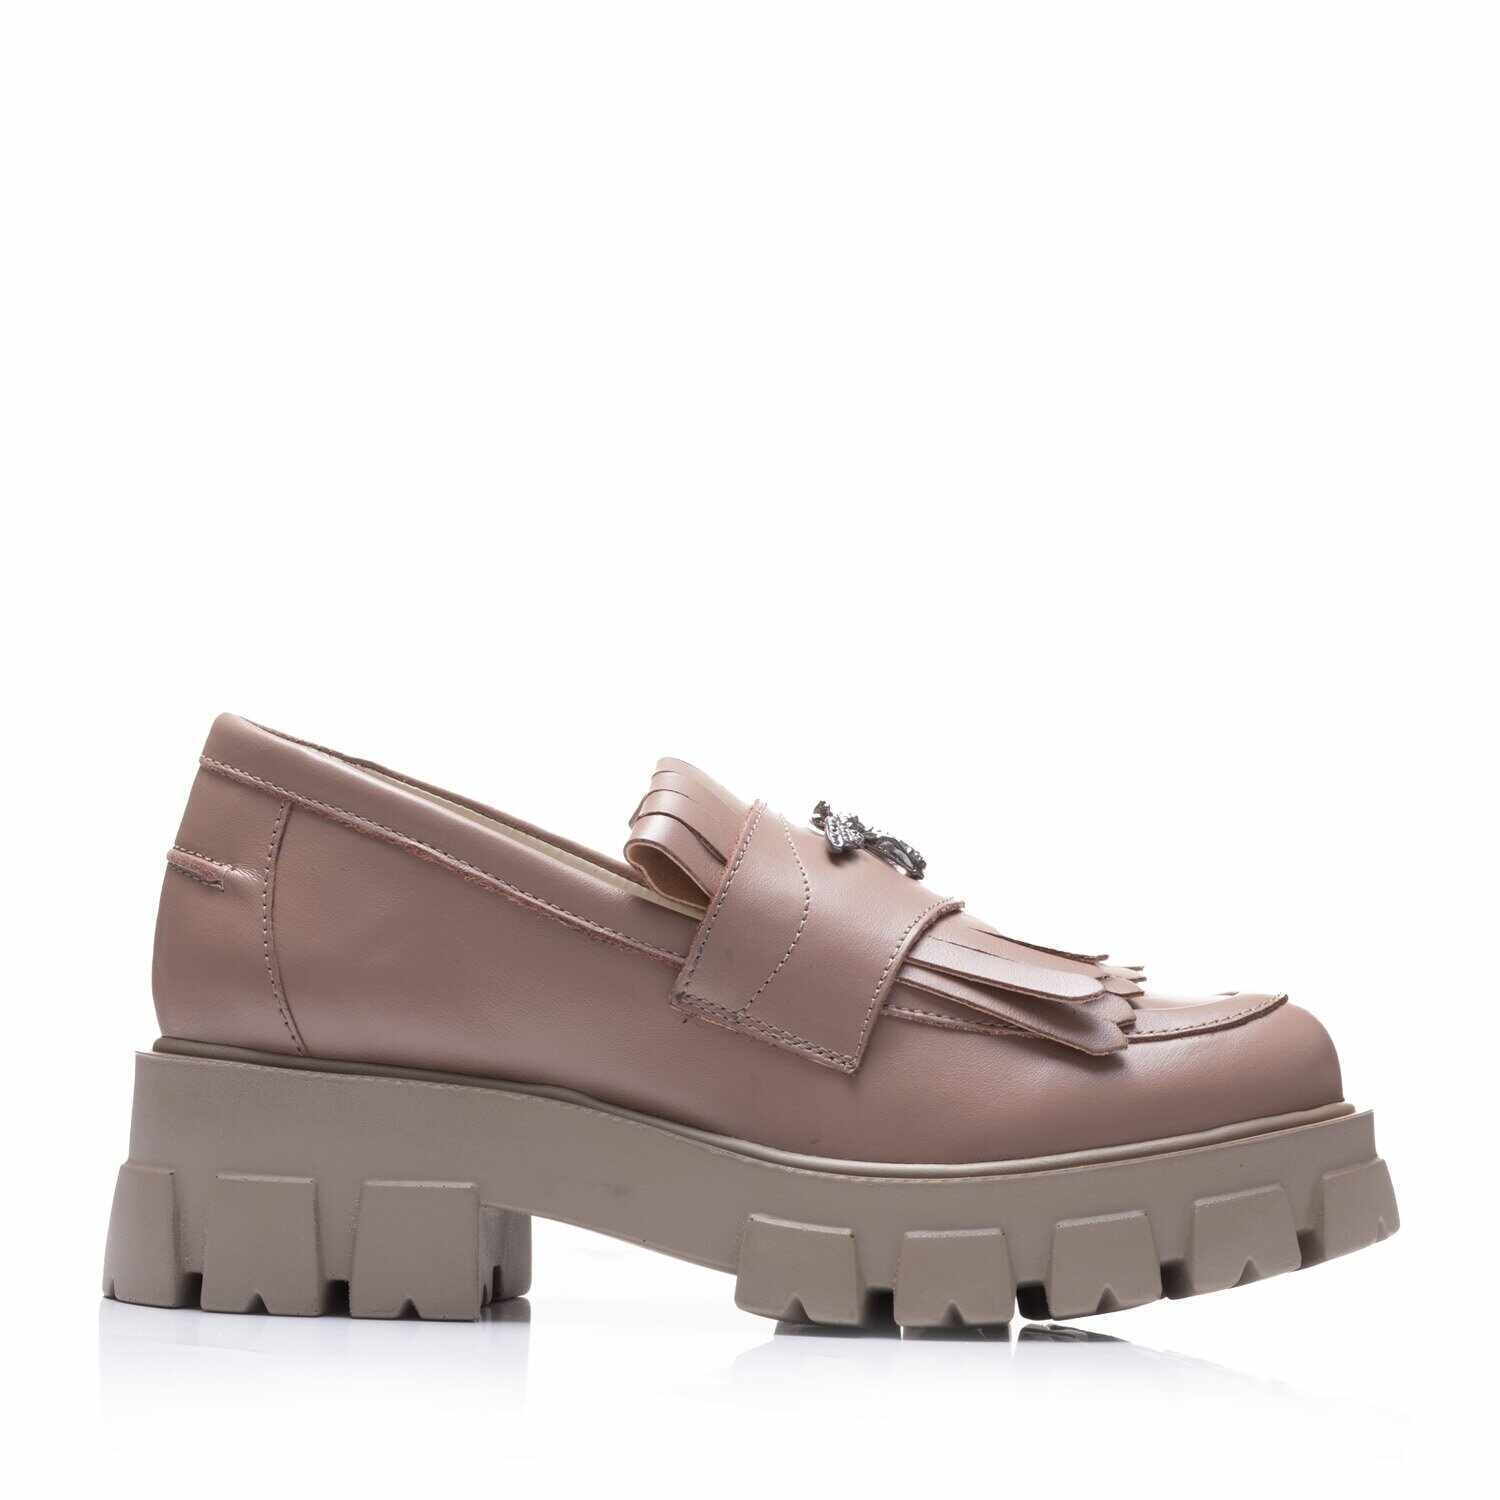 Pantofi casual damă din piele naturală, Leofex - 405-1 Taupe Box